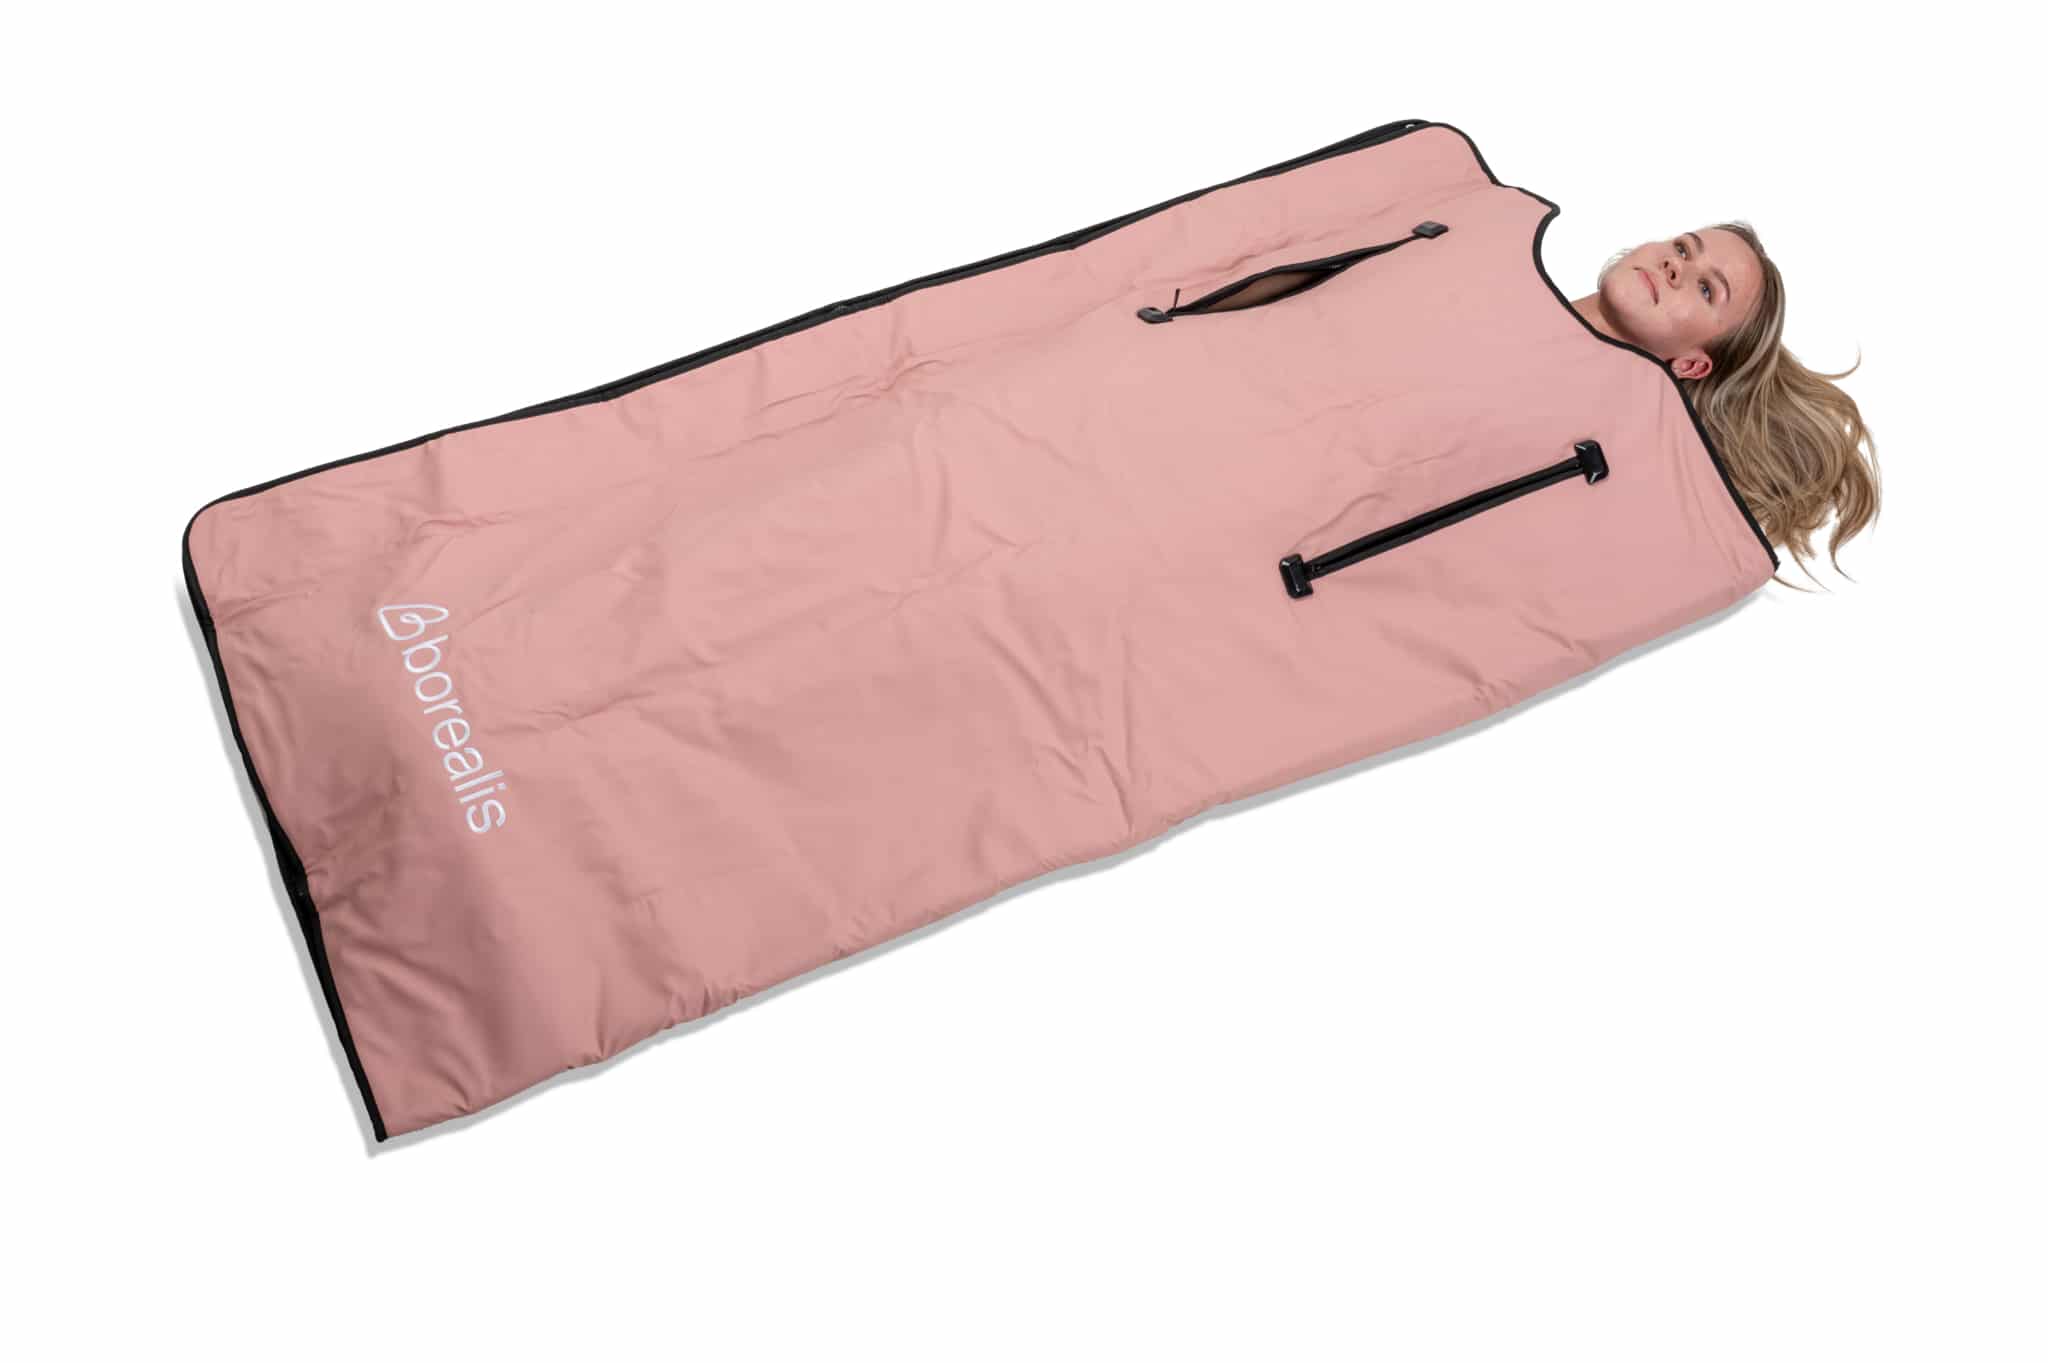 Infrasarkanais paklājs ar atvērumiem rokām, S/M izmērs, rozā krāsā